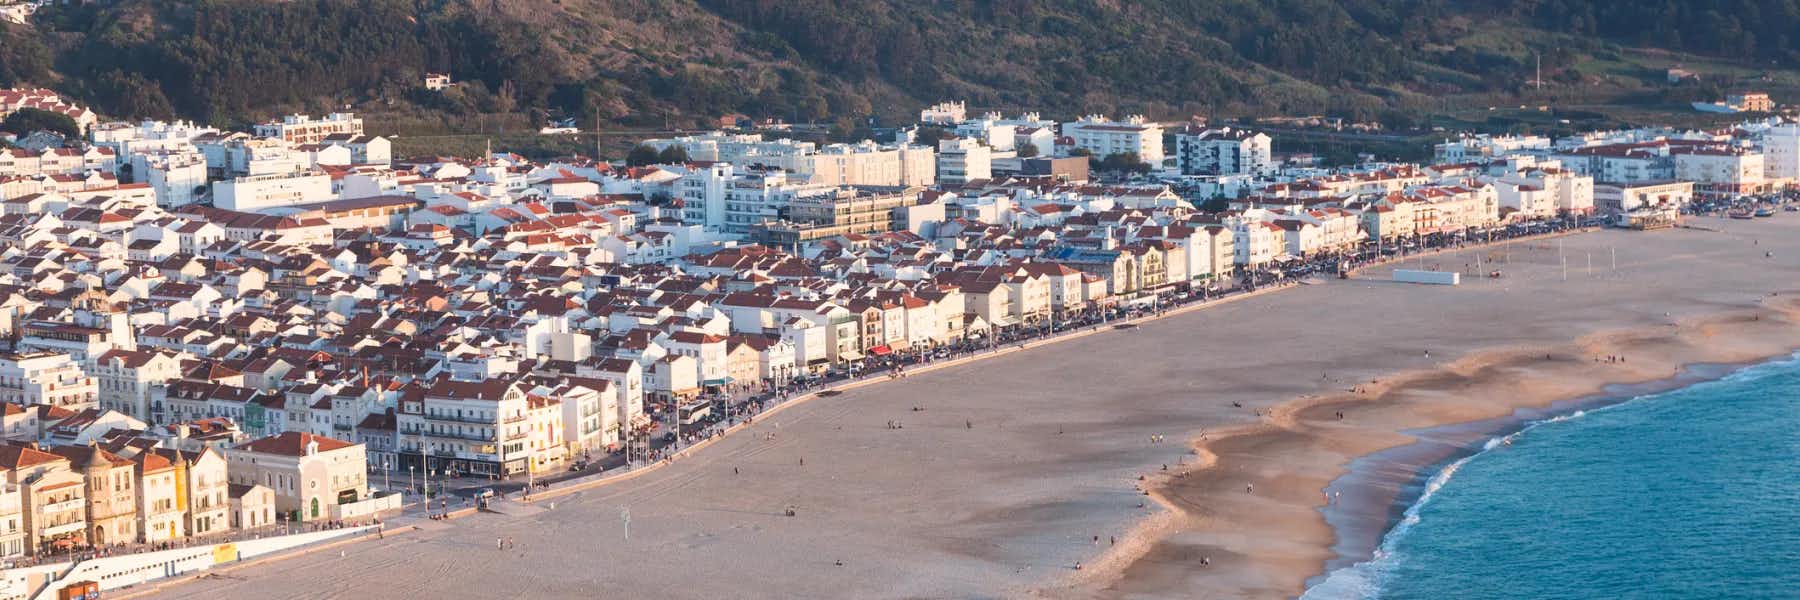 The Silver Coast, Portugal